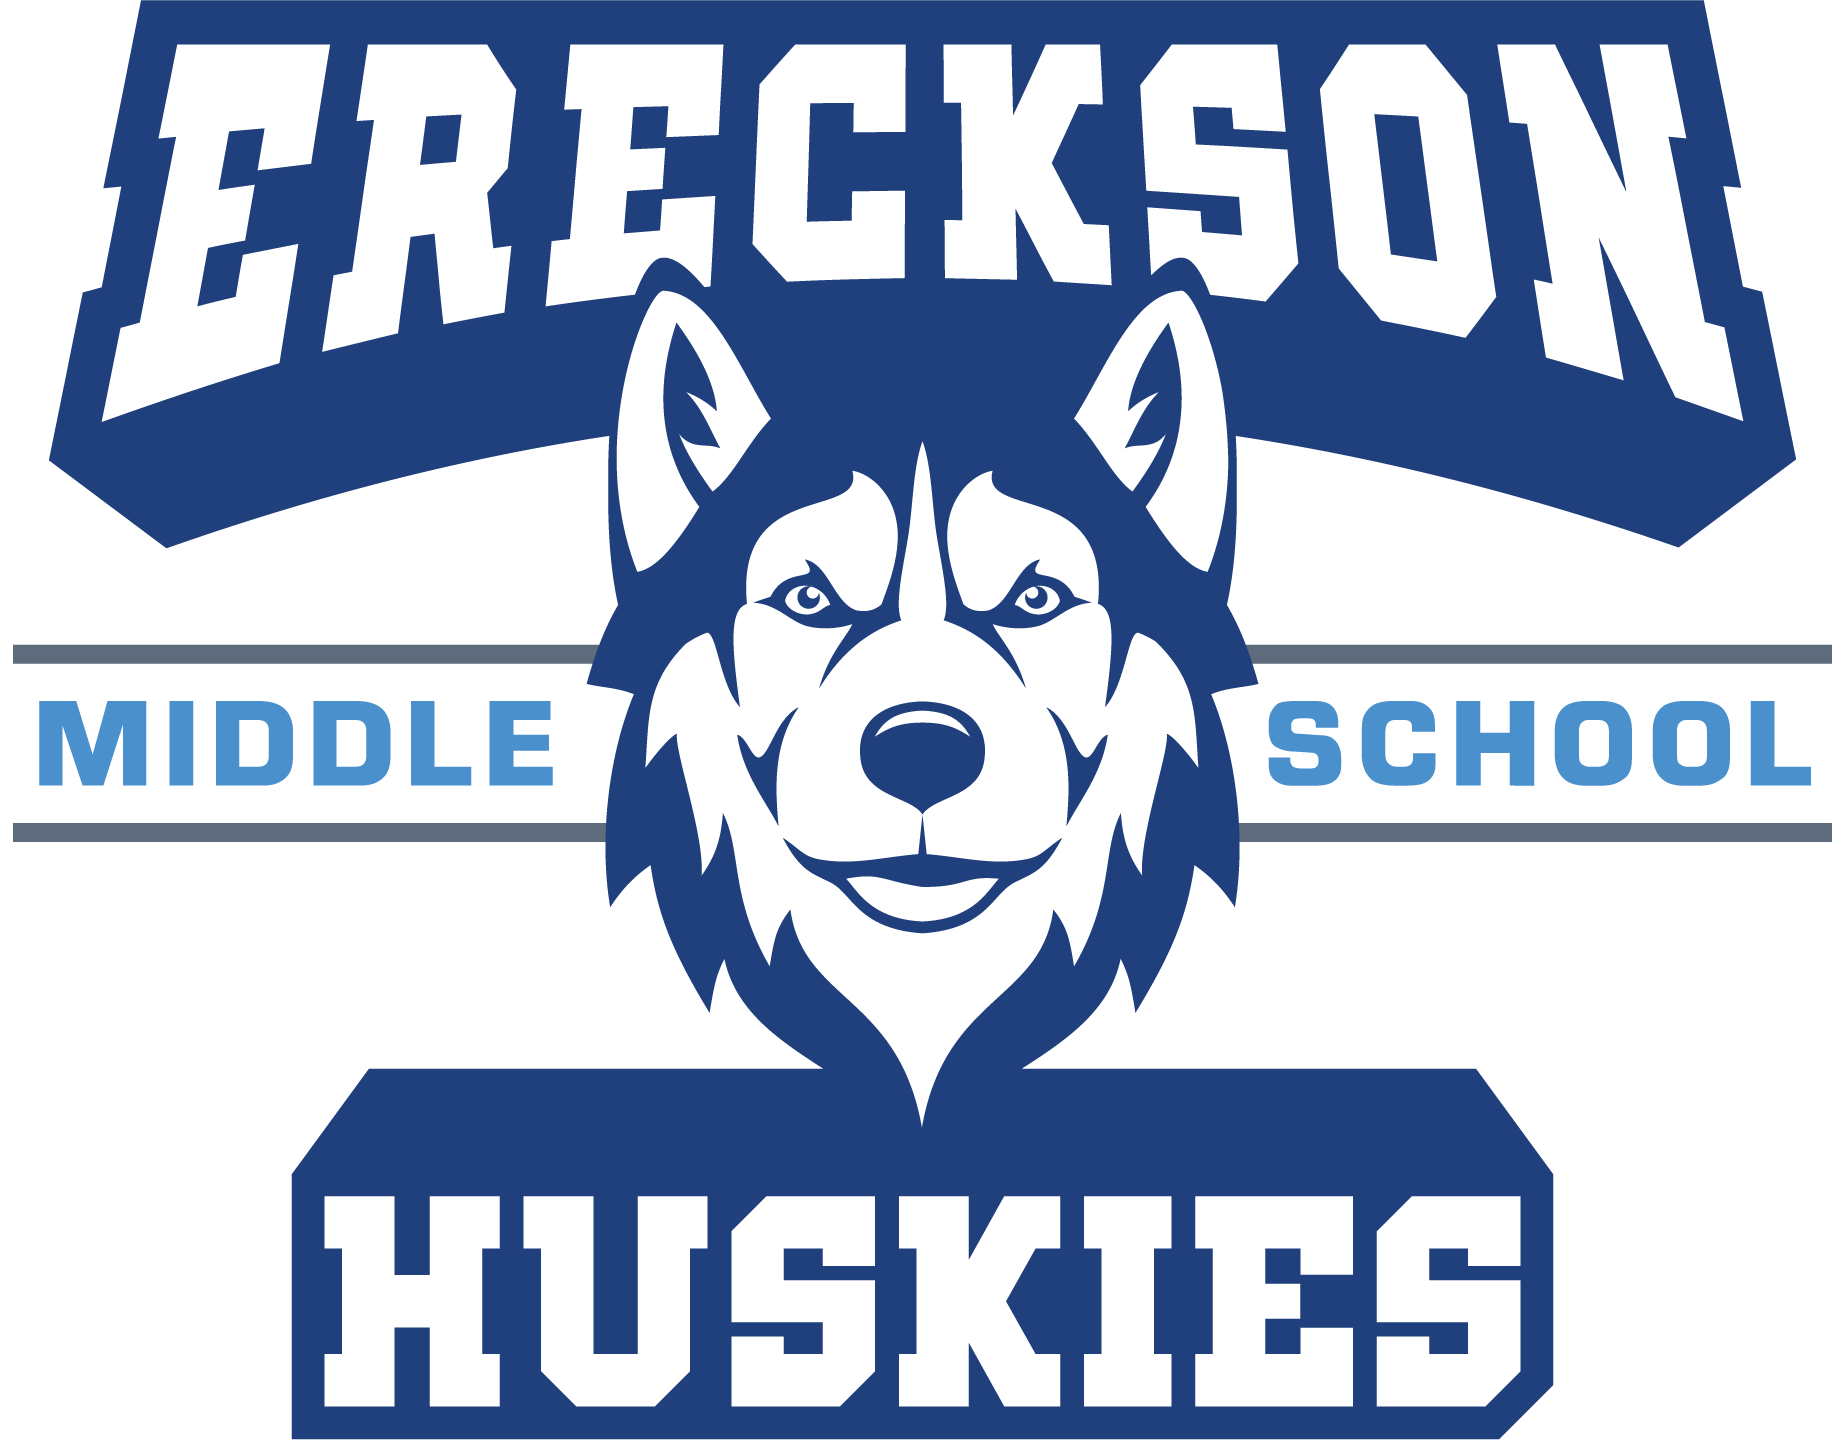 Ereckson Middle School